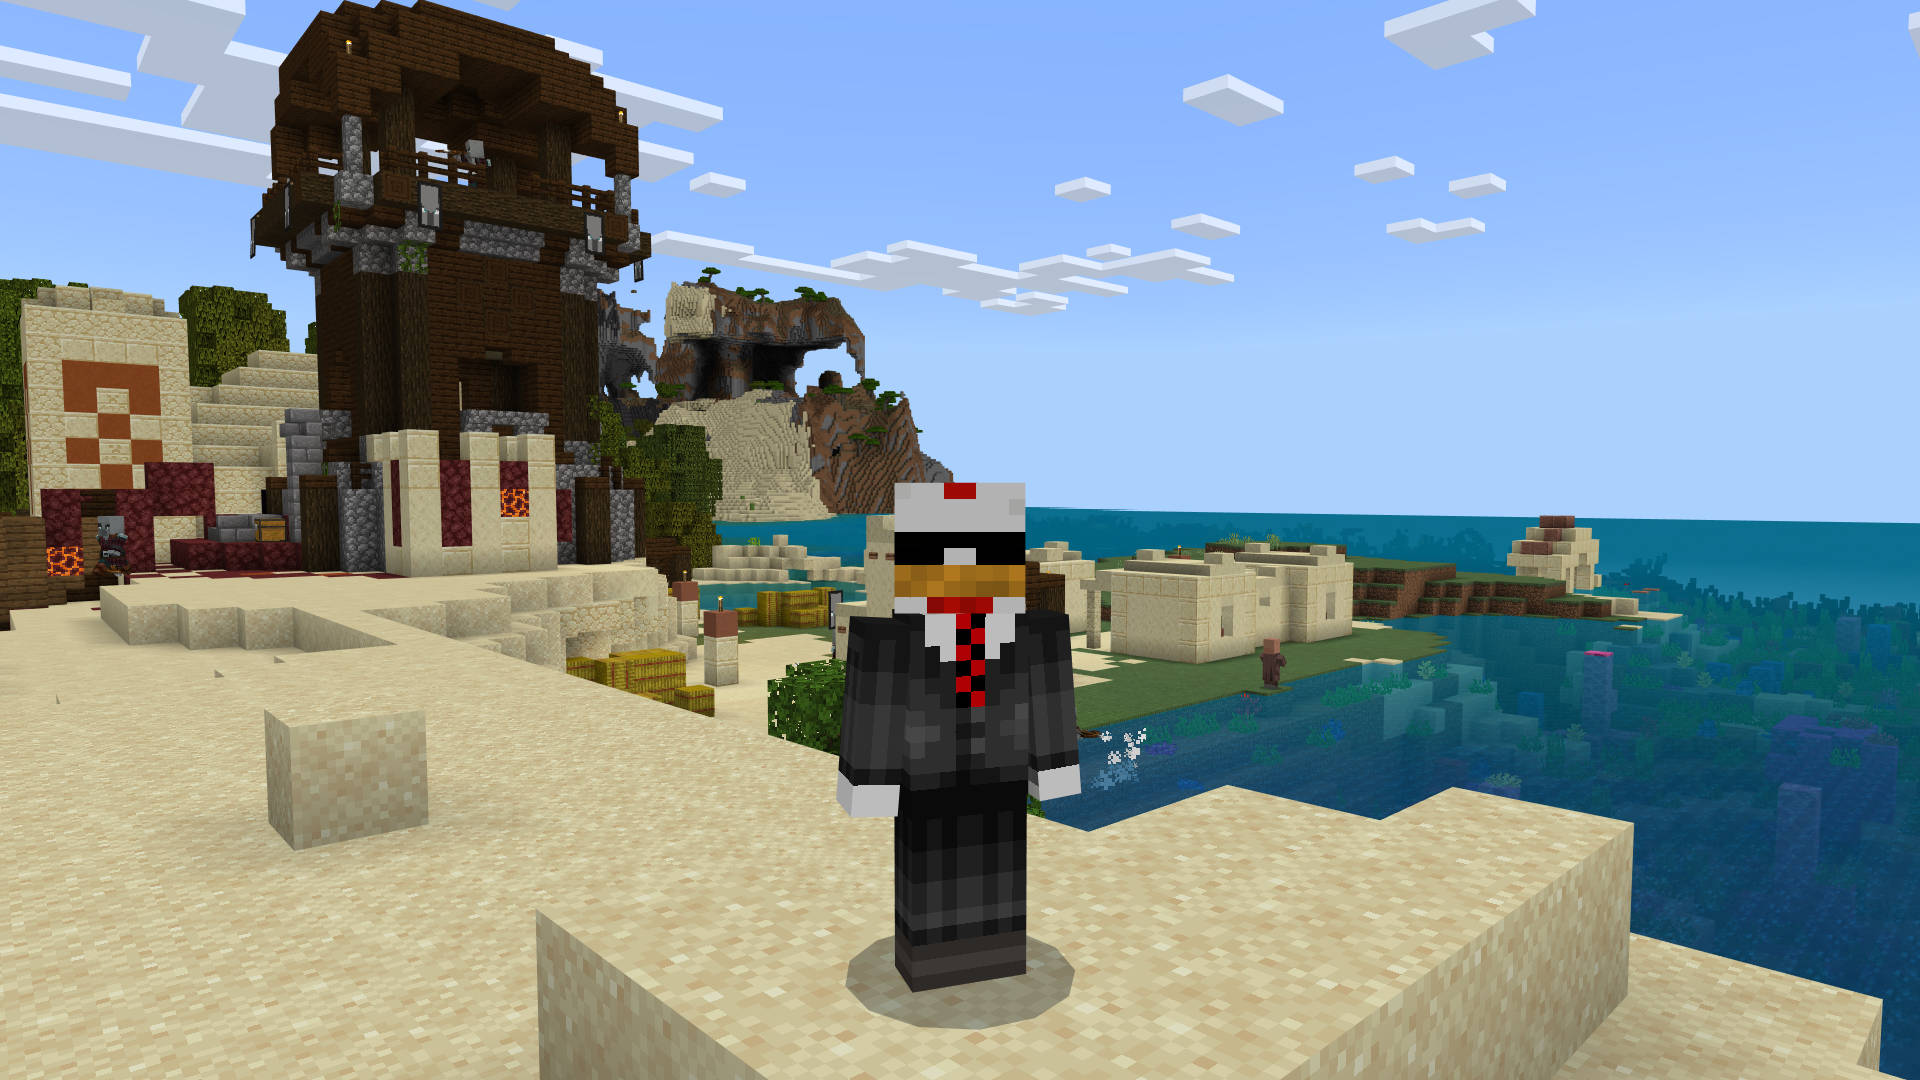 Bästa Minecraft-frön: en kyckling i kostym som står nära Illagertornet på stranden.